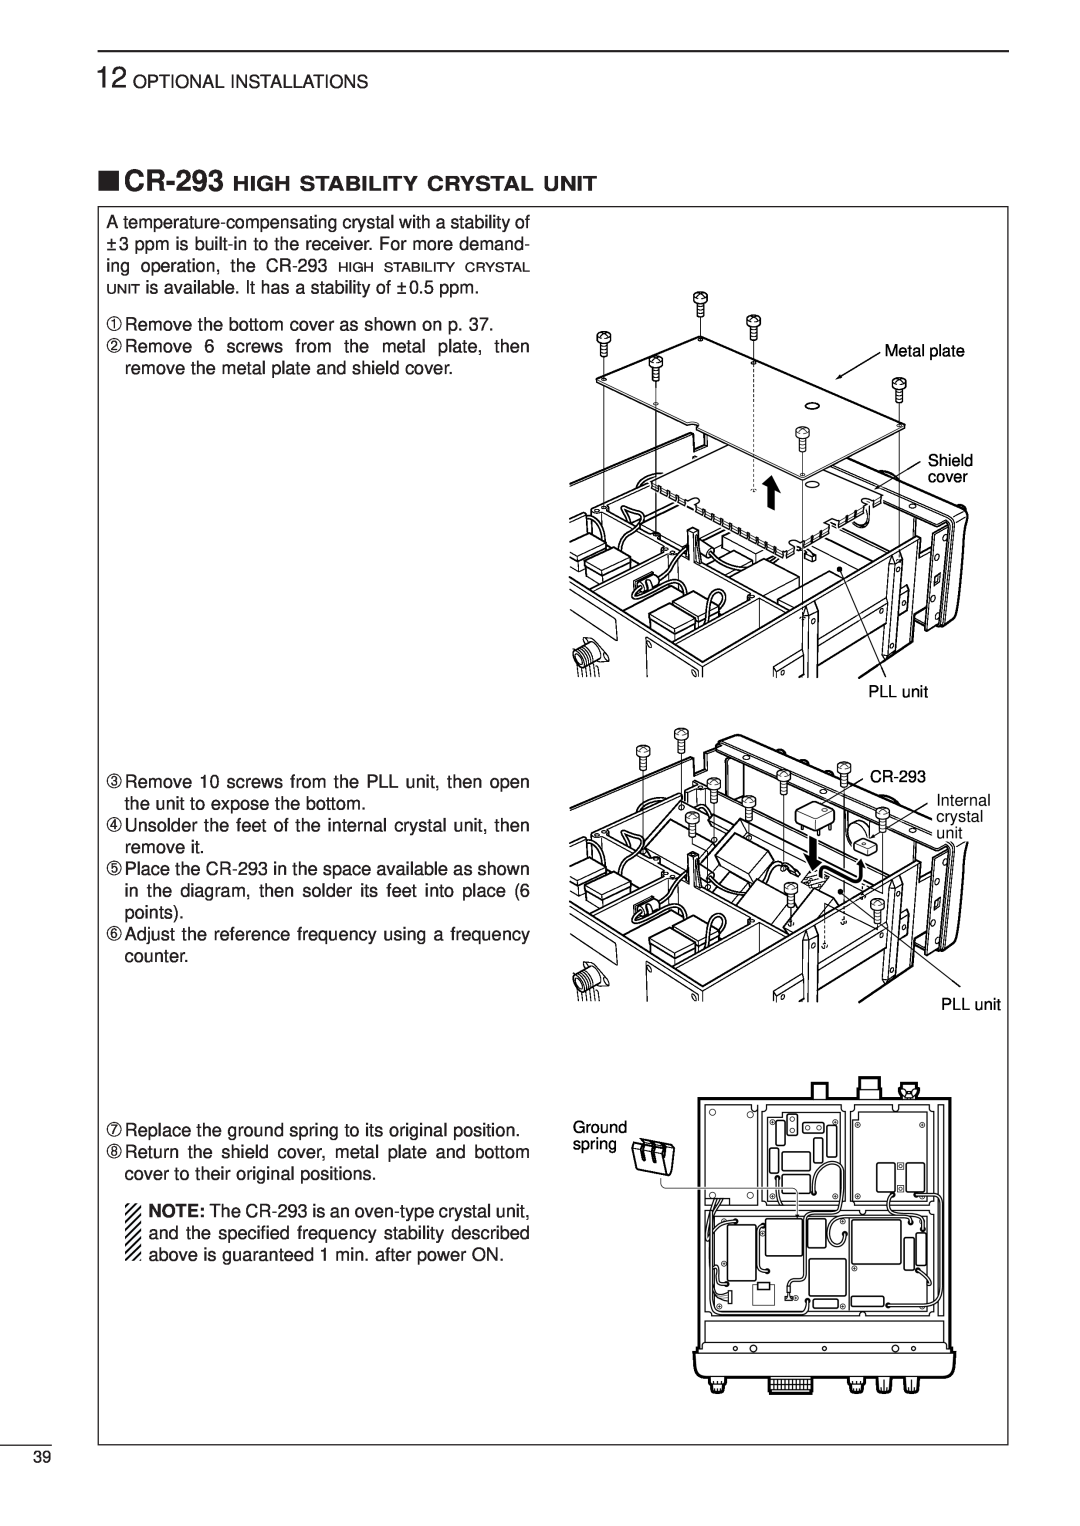 Icom IC-R8500 instruction manual CR-293 HIGH STABILITY CRYSTAL UNIT 